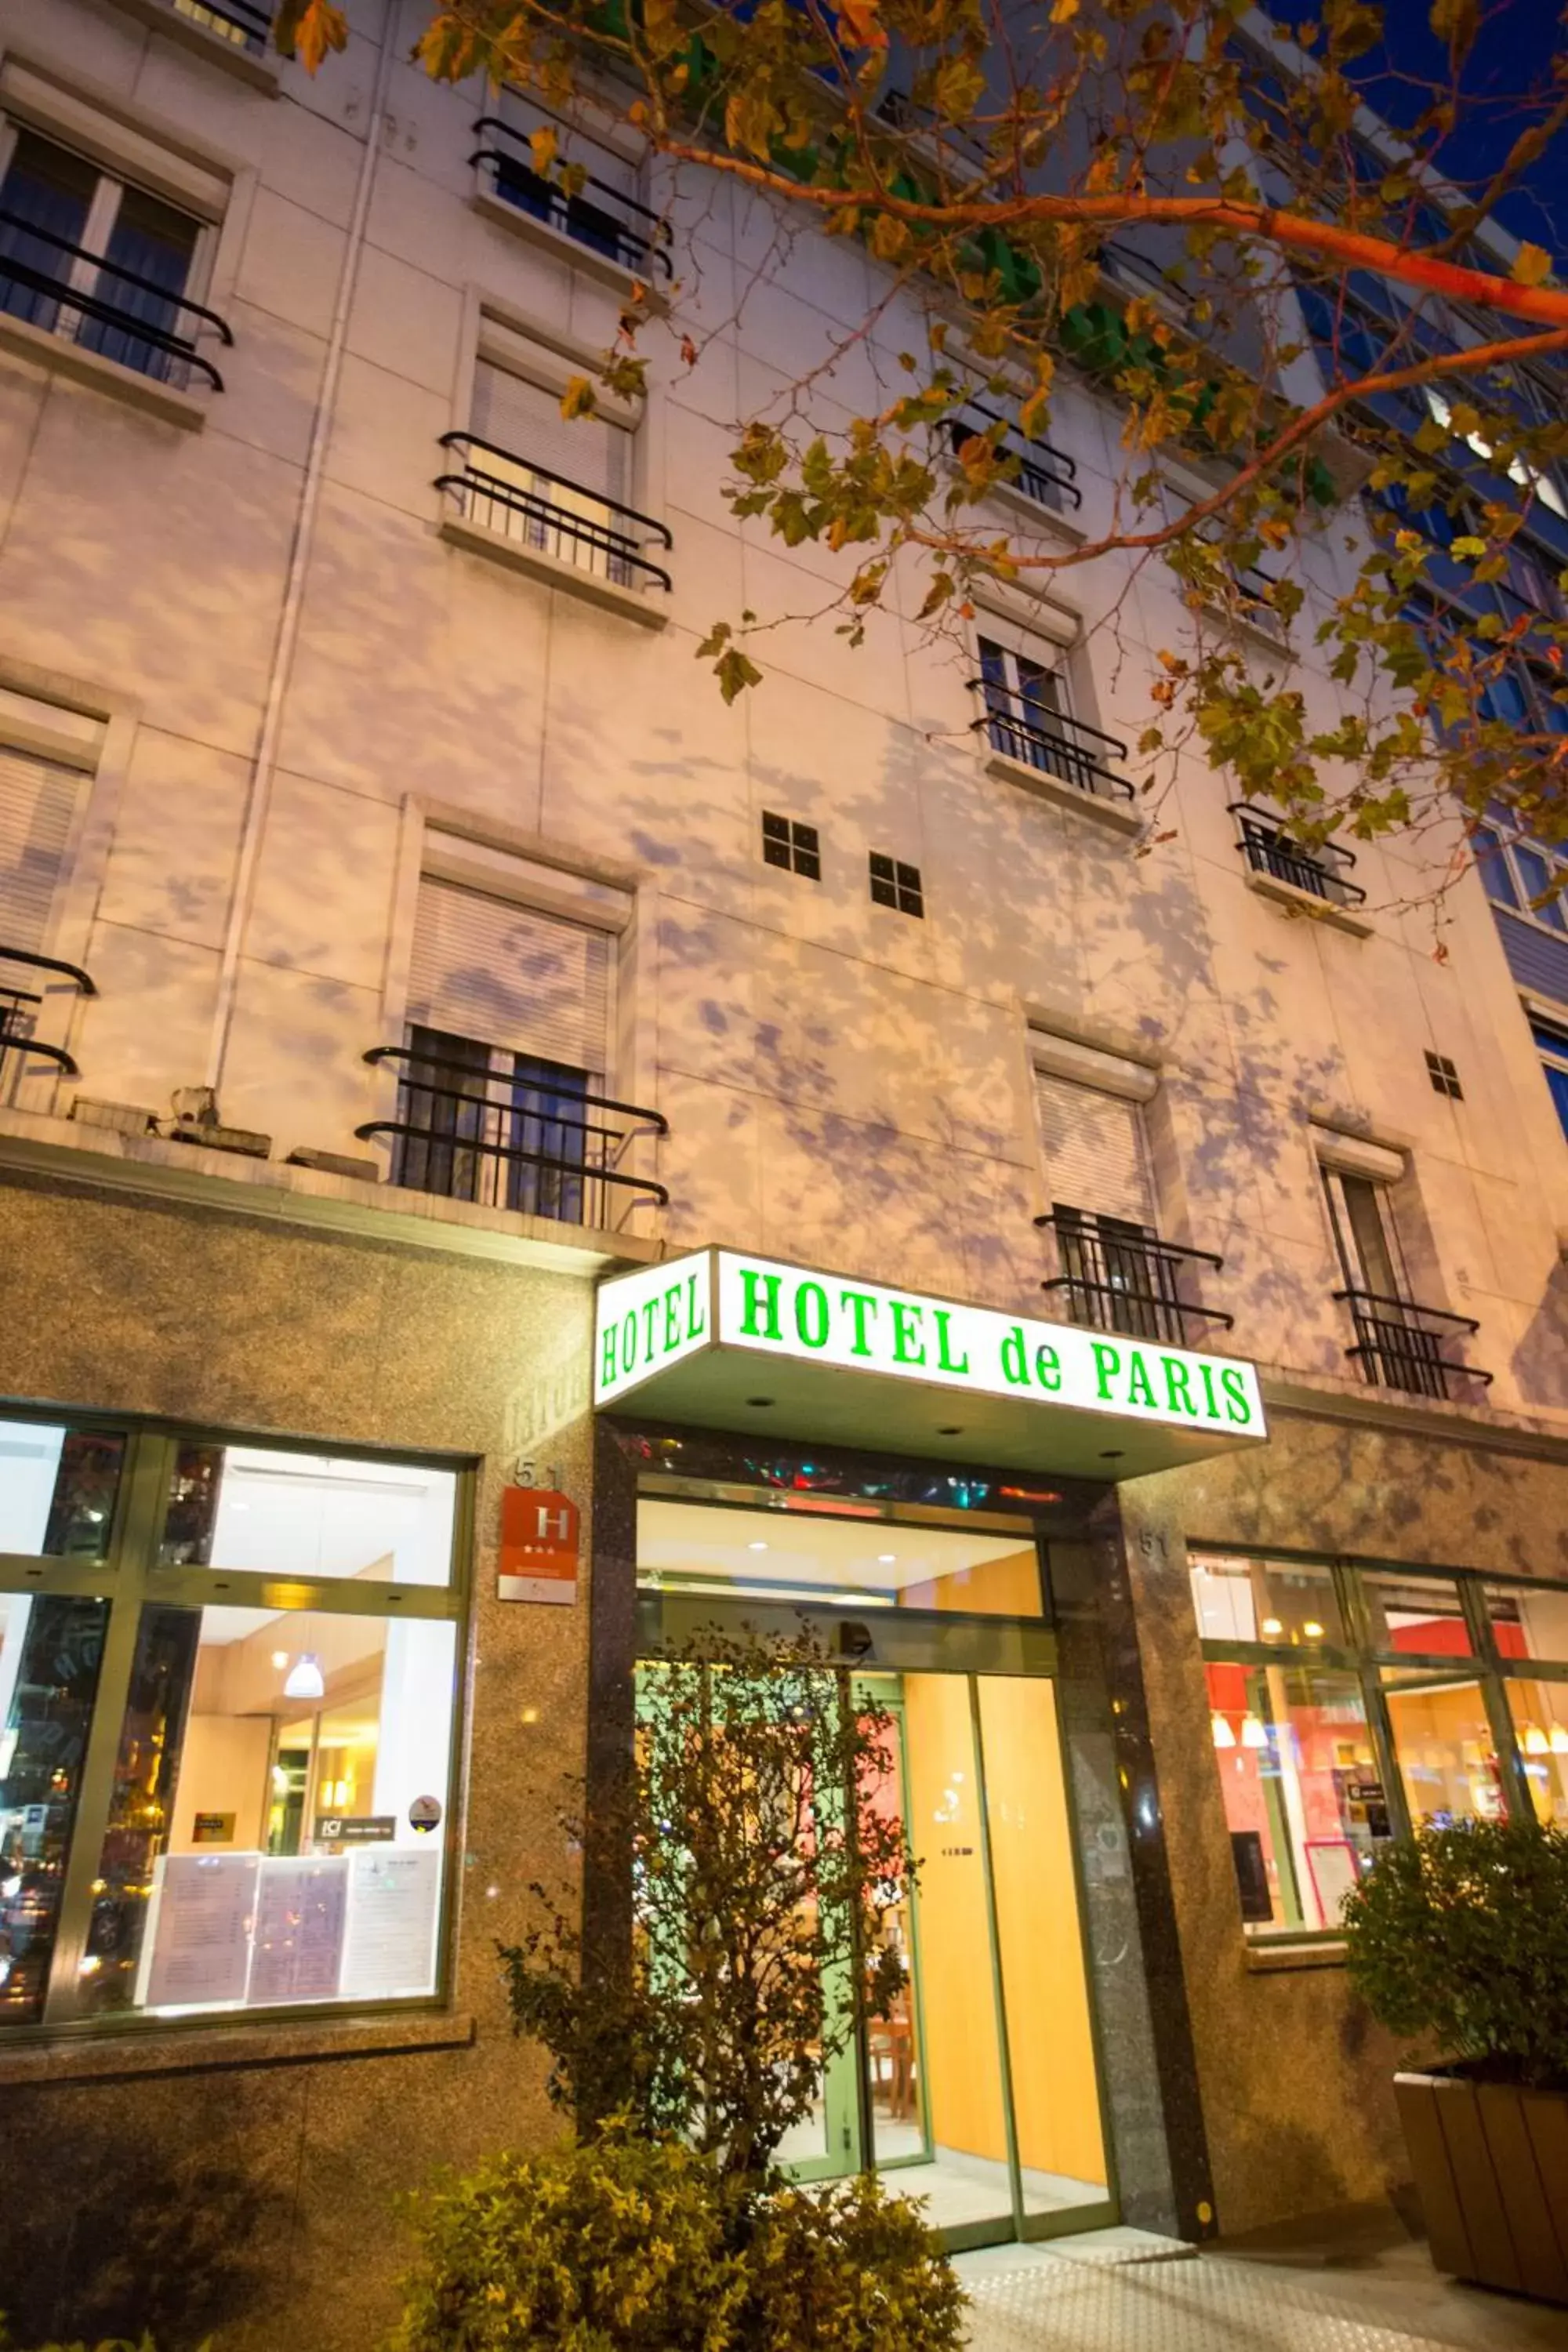 Property Building in HOTEL DE PARIS MONTPARNASSE